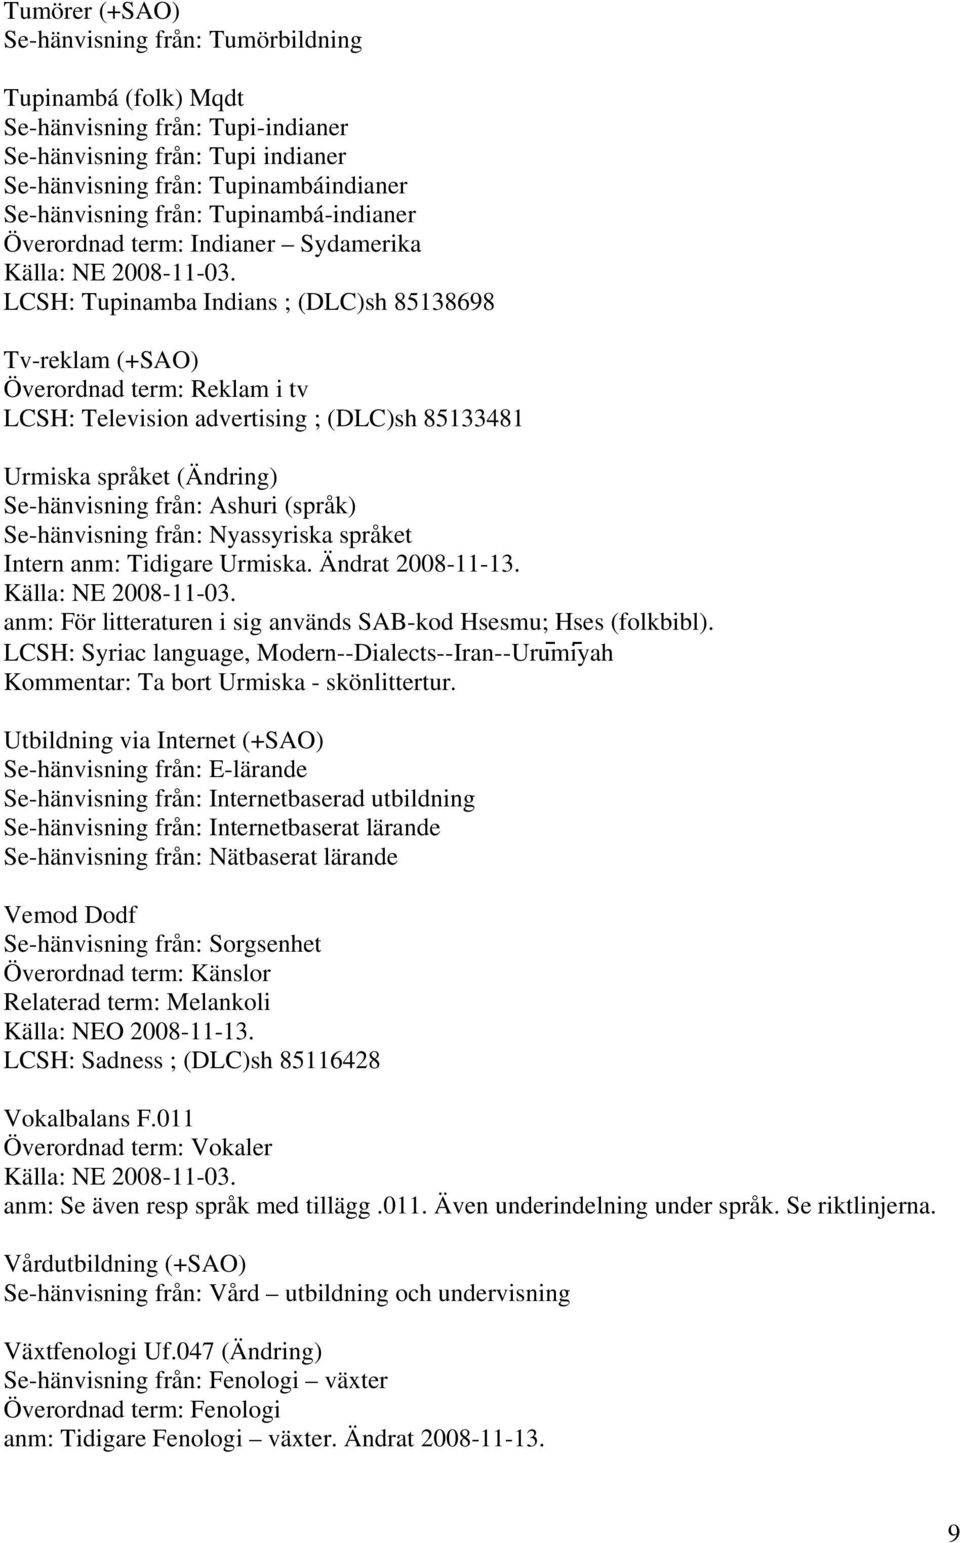 Urmiska språket (Ändring) Se-hänvisning från: Ashuri (språk) Se-hänvisning från: Nyassyriska språket Intern anm: Tidigare Urmiska. Ändrat 2008-11-13.